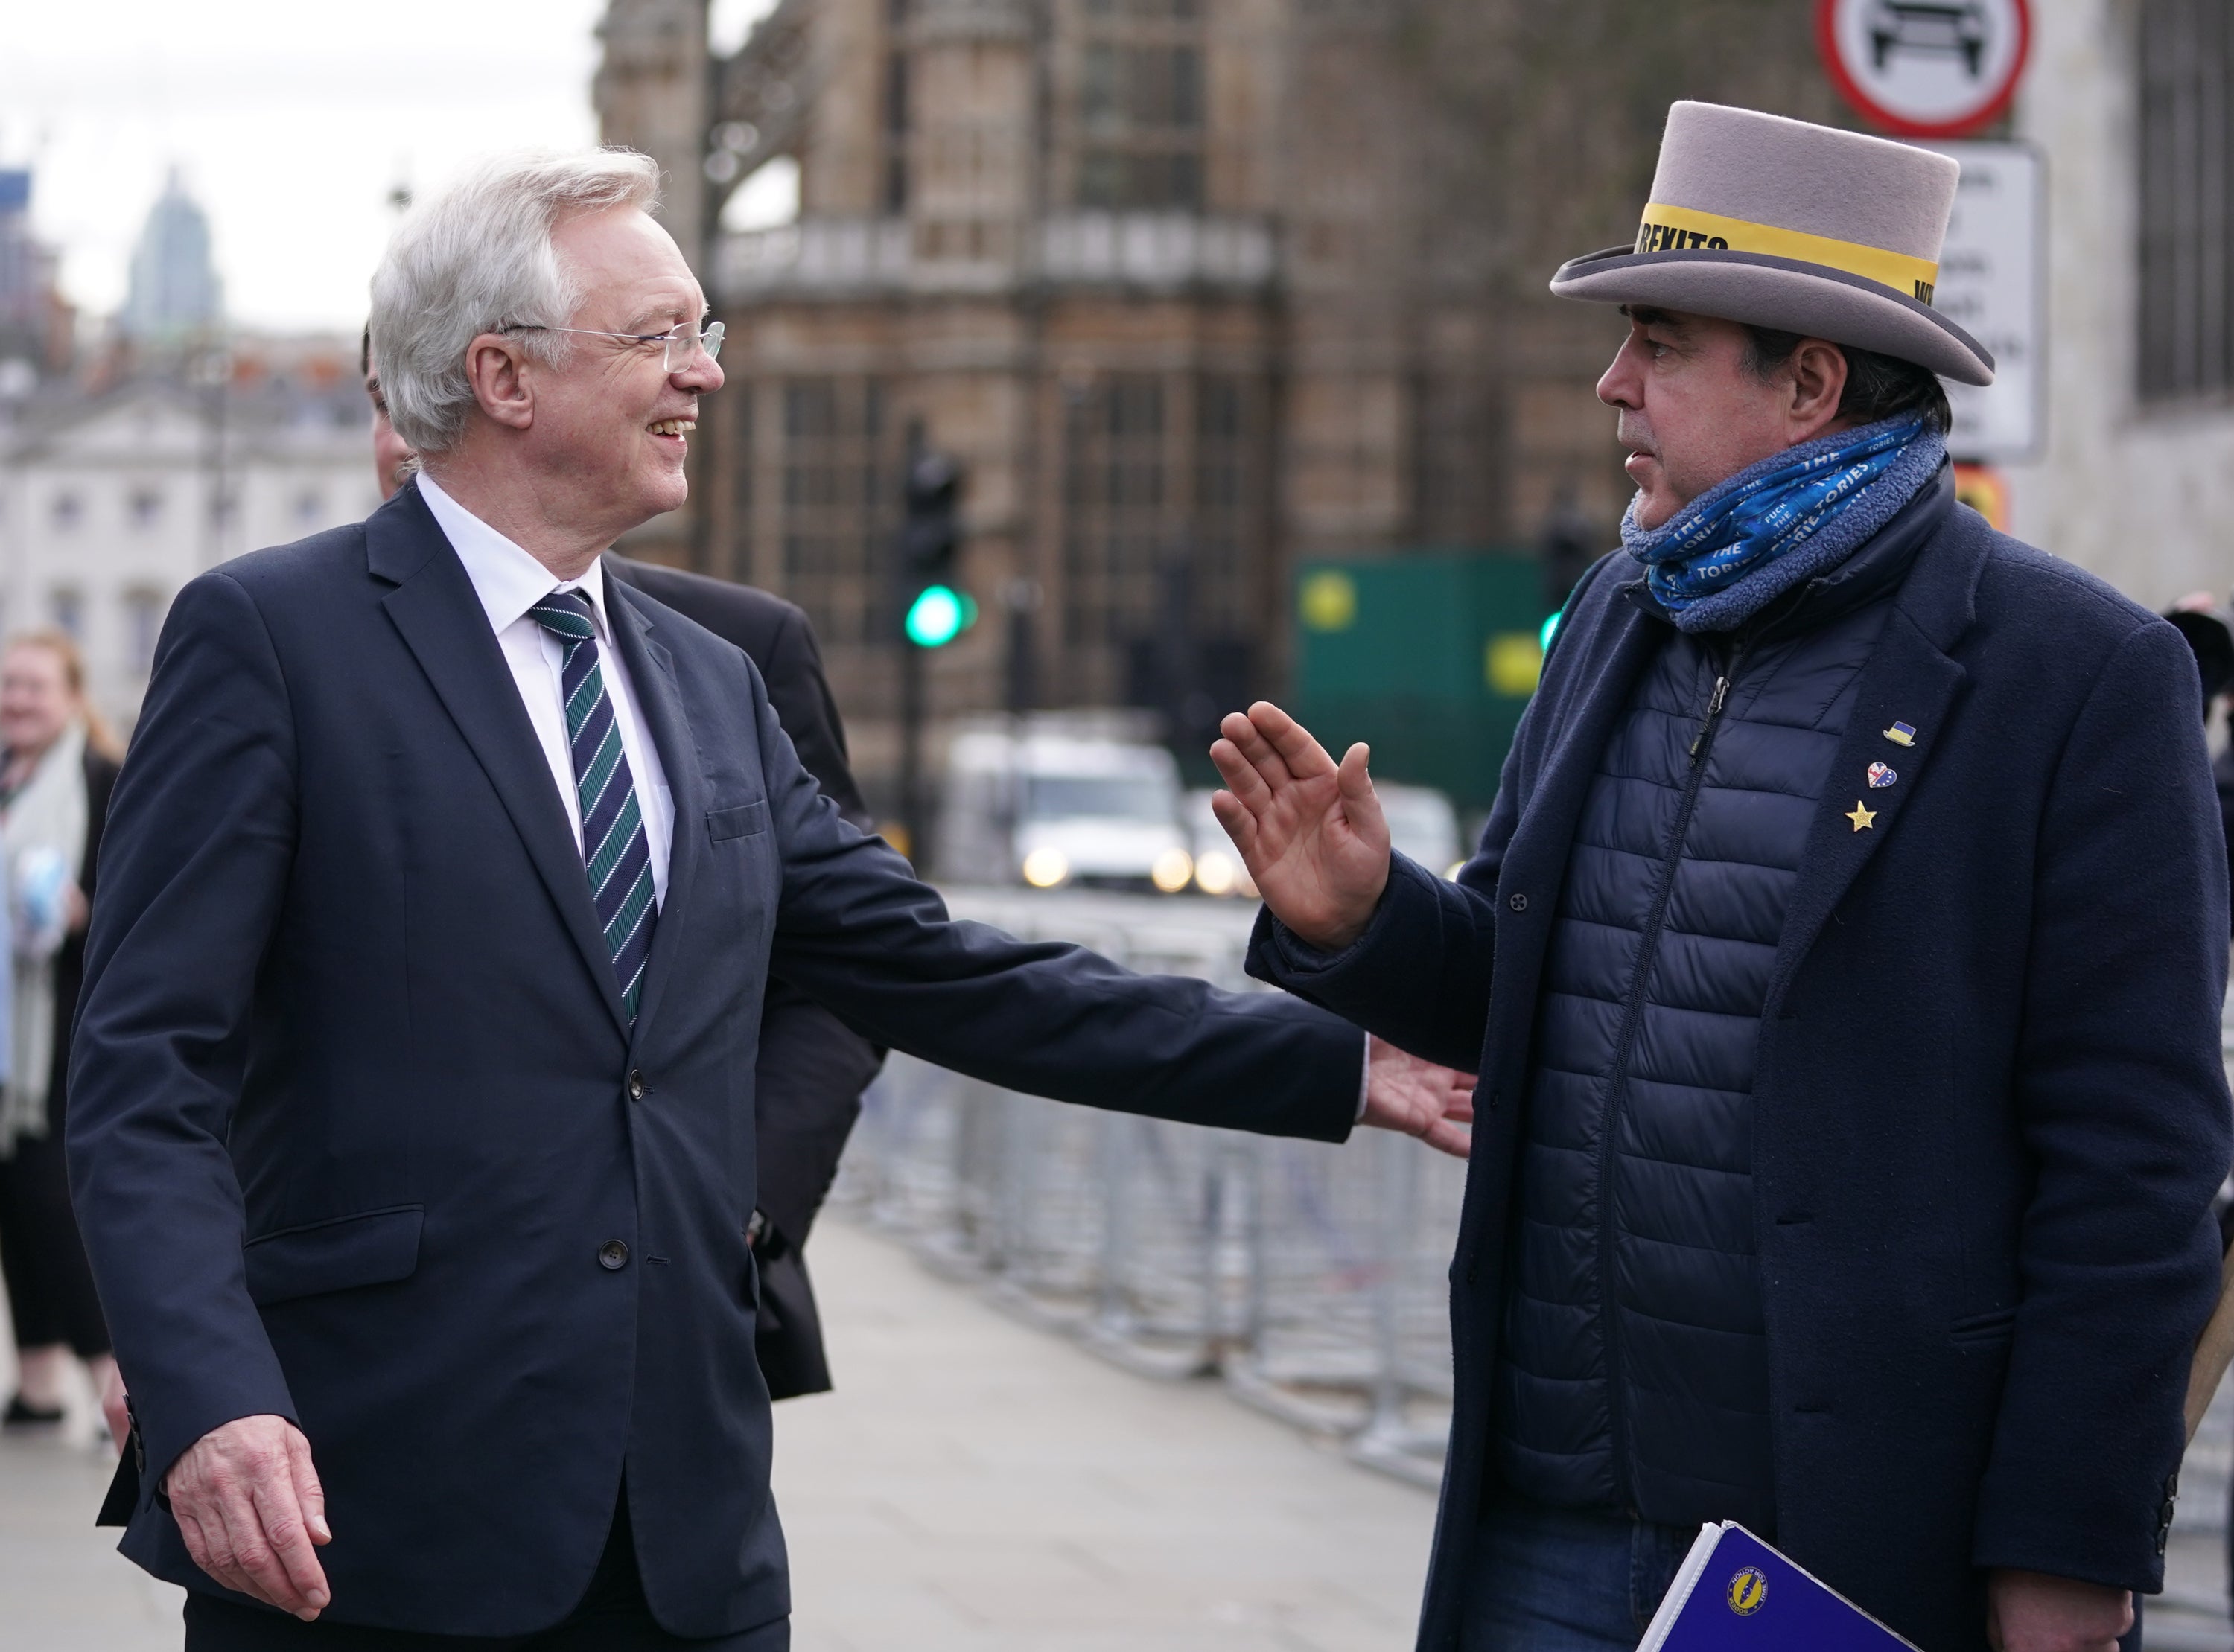 MP David Davis speaks to anti-Brexit protester Steve Bray (Kirsty O’Connor/PA)